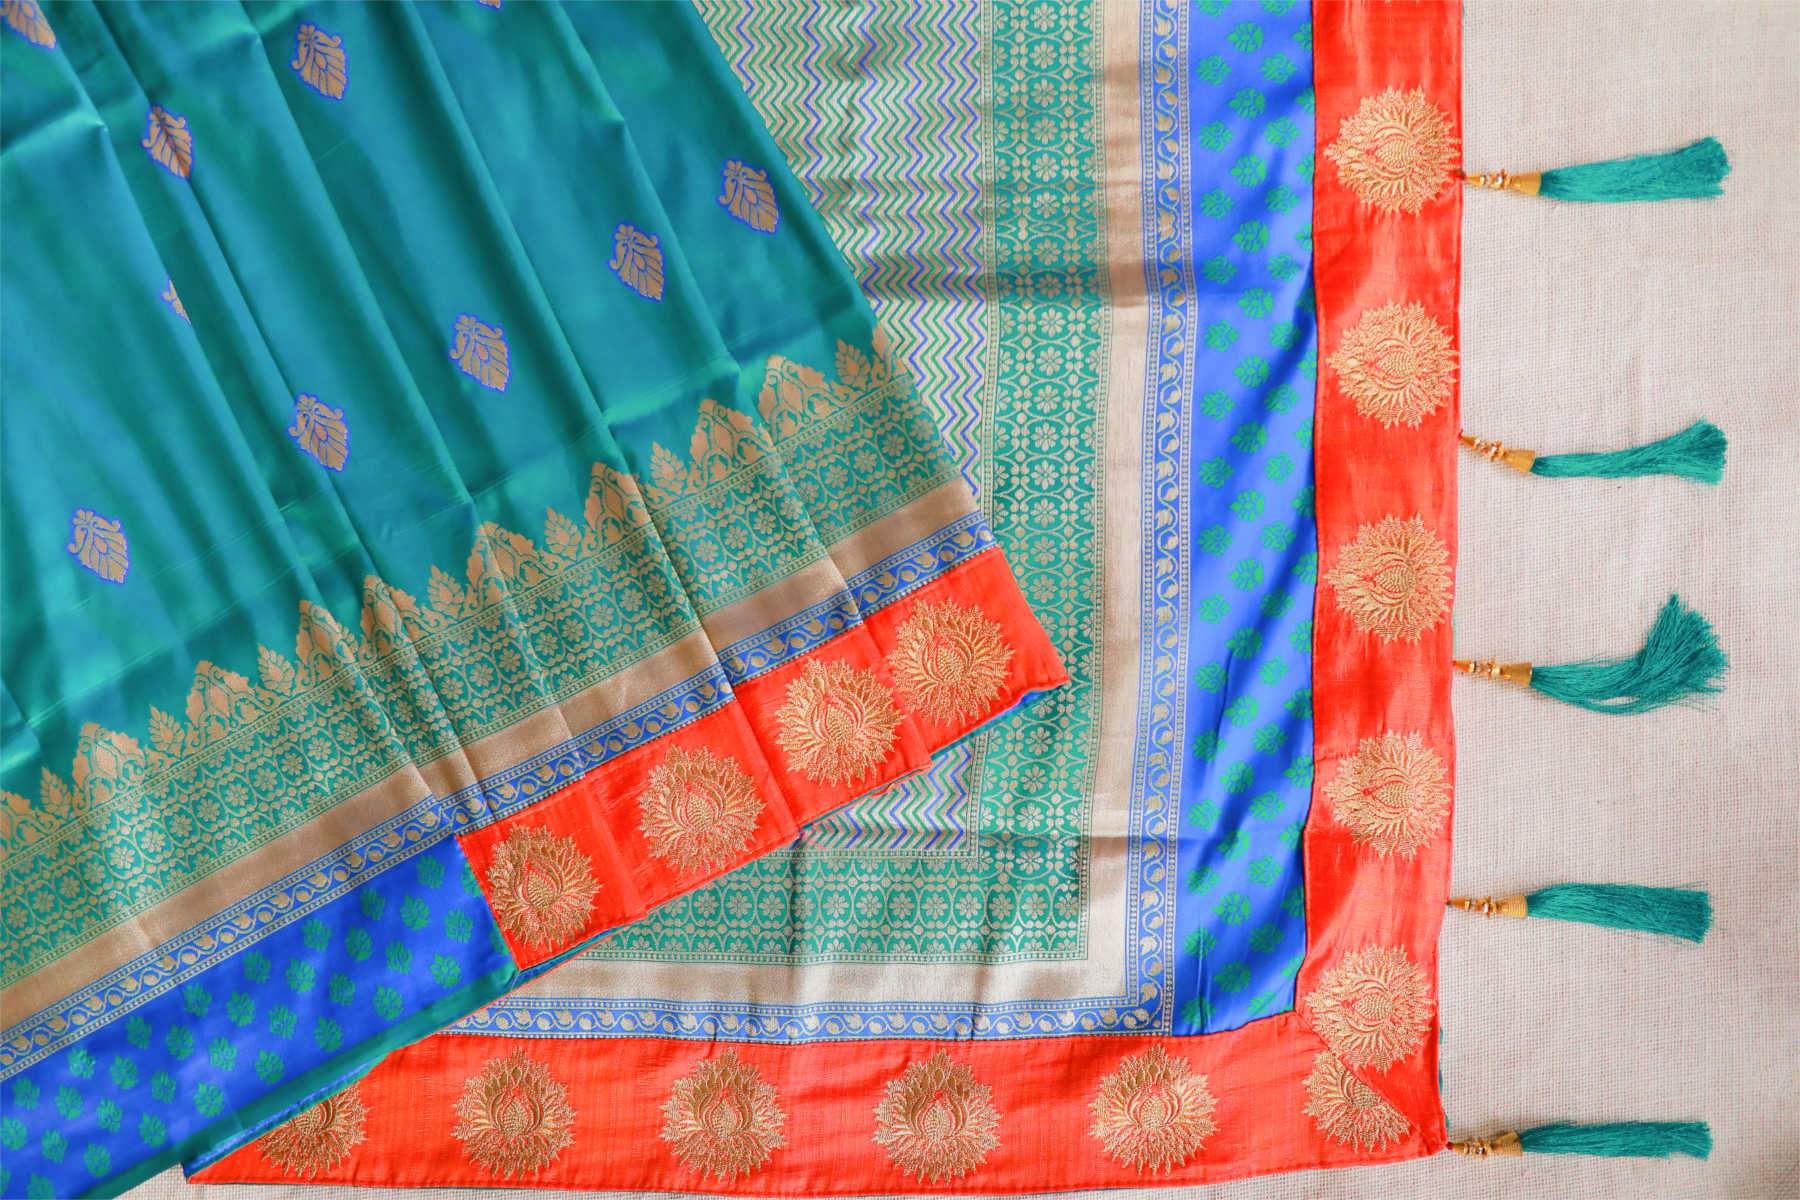 Tropical Marvel Banarasi Silk Saree -BNS020 blue-green coloured partywear saree